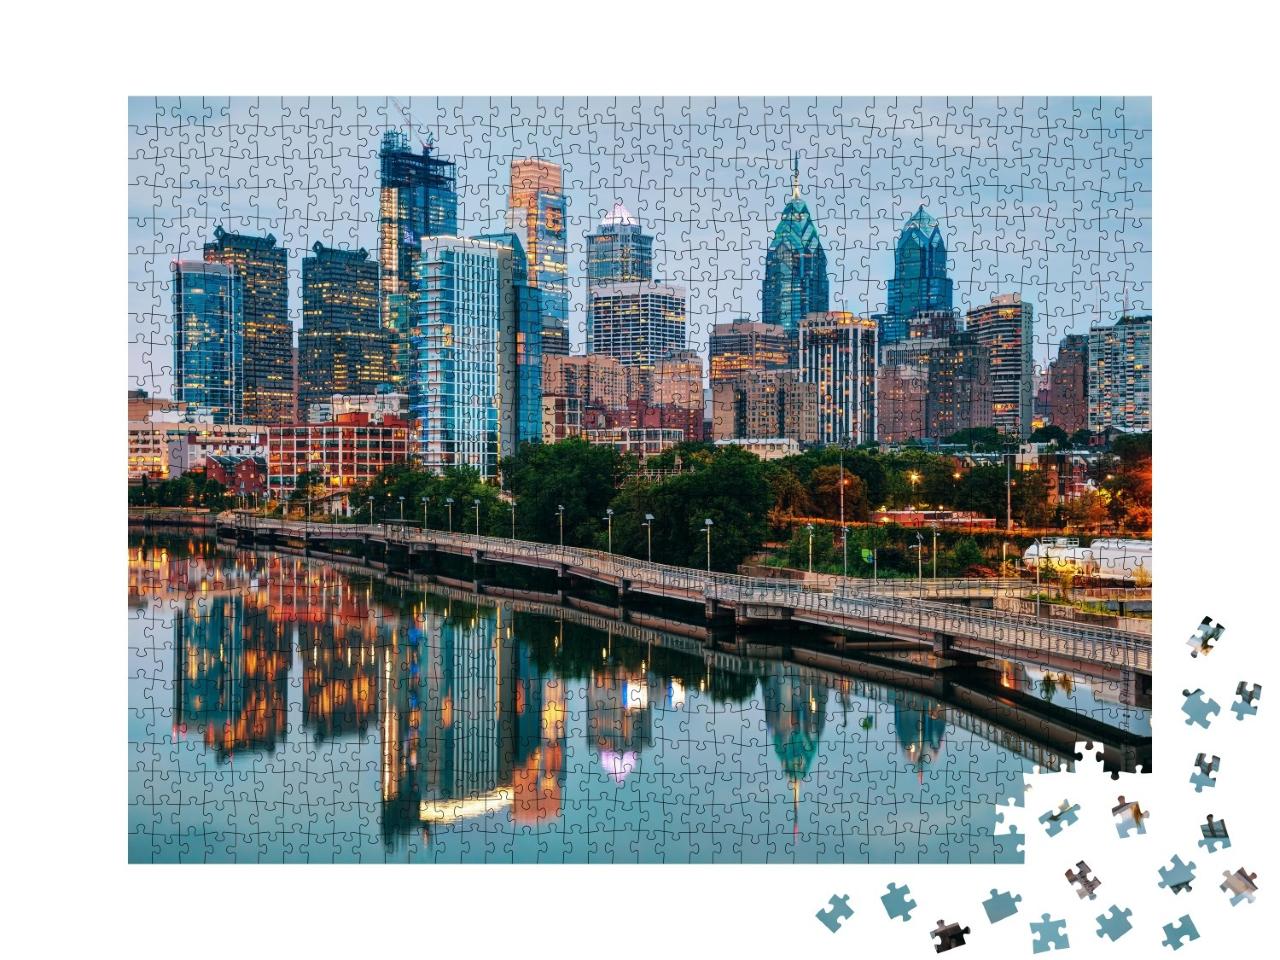 Puzzle de 1000 pièces « Skyline de Philadelphie de nuit avec la rivière Schuylkill »